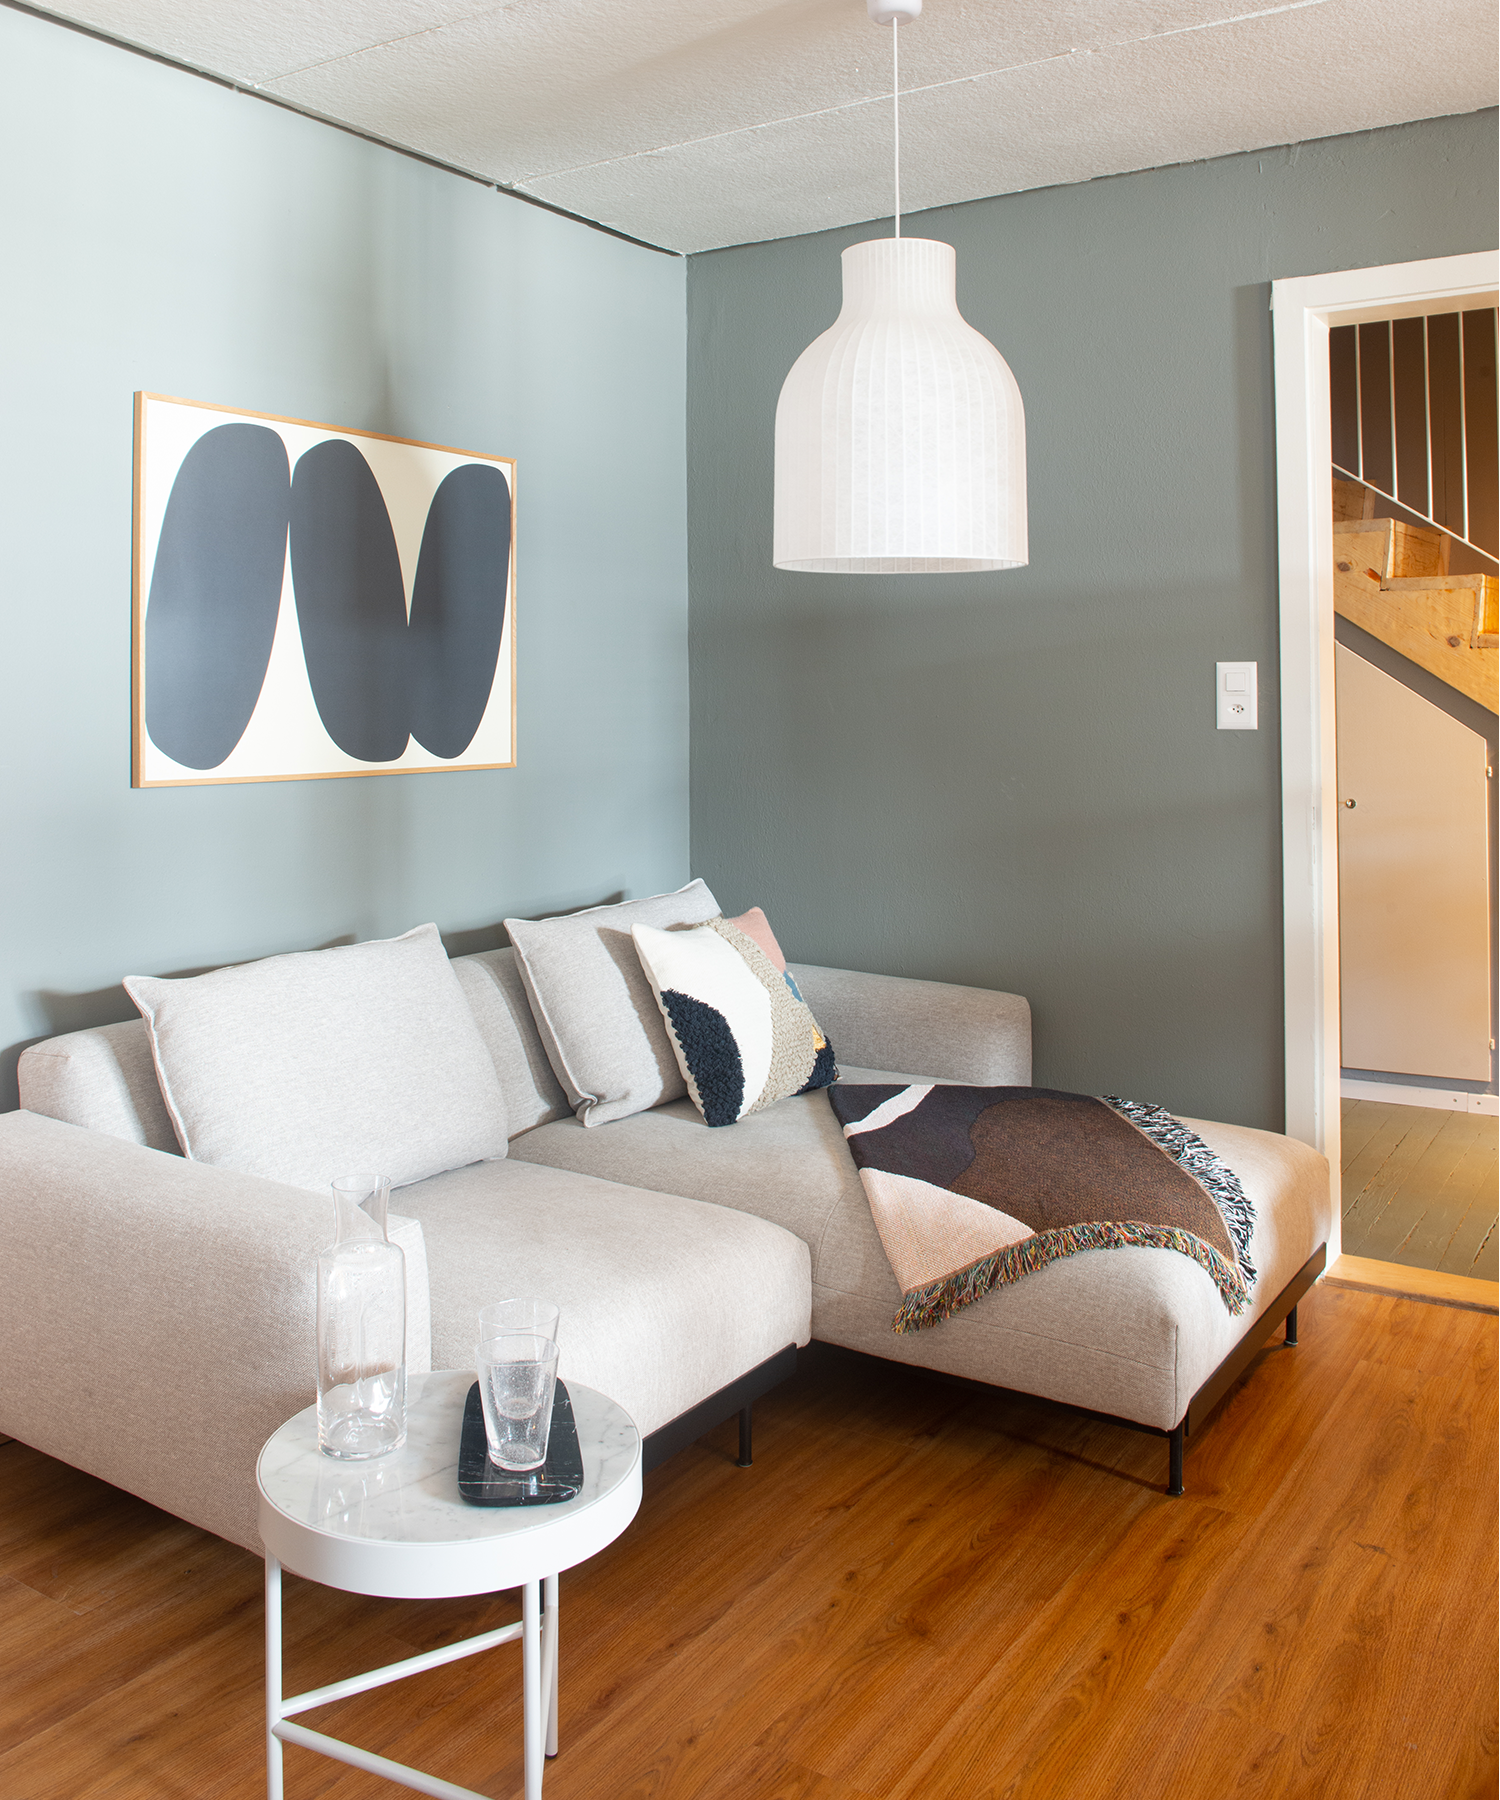 Wohnzimmer mit grau-grüner Wand, Muuto und Ferm Living Mobiliar